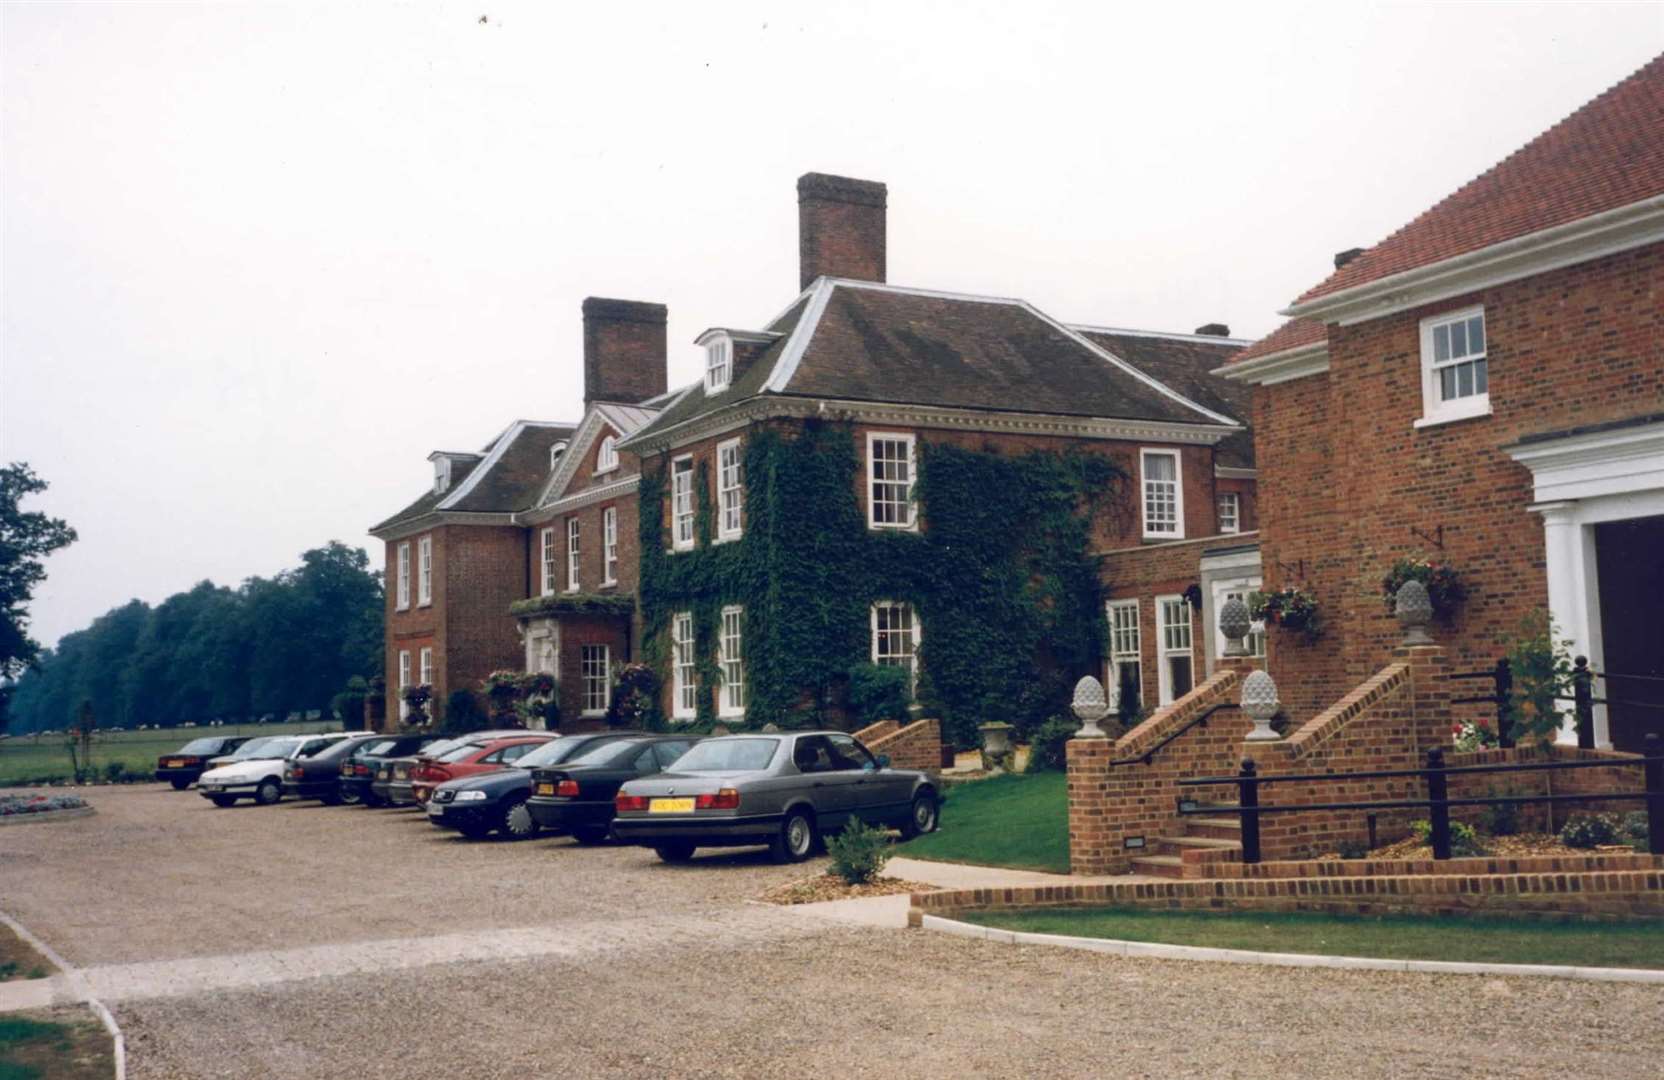 Chilston Park Hotel, Lenham in1997